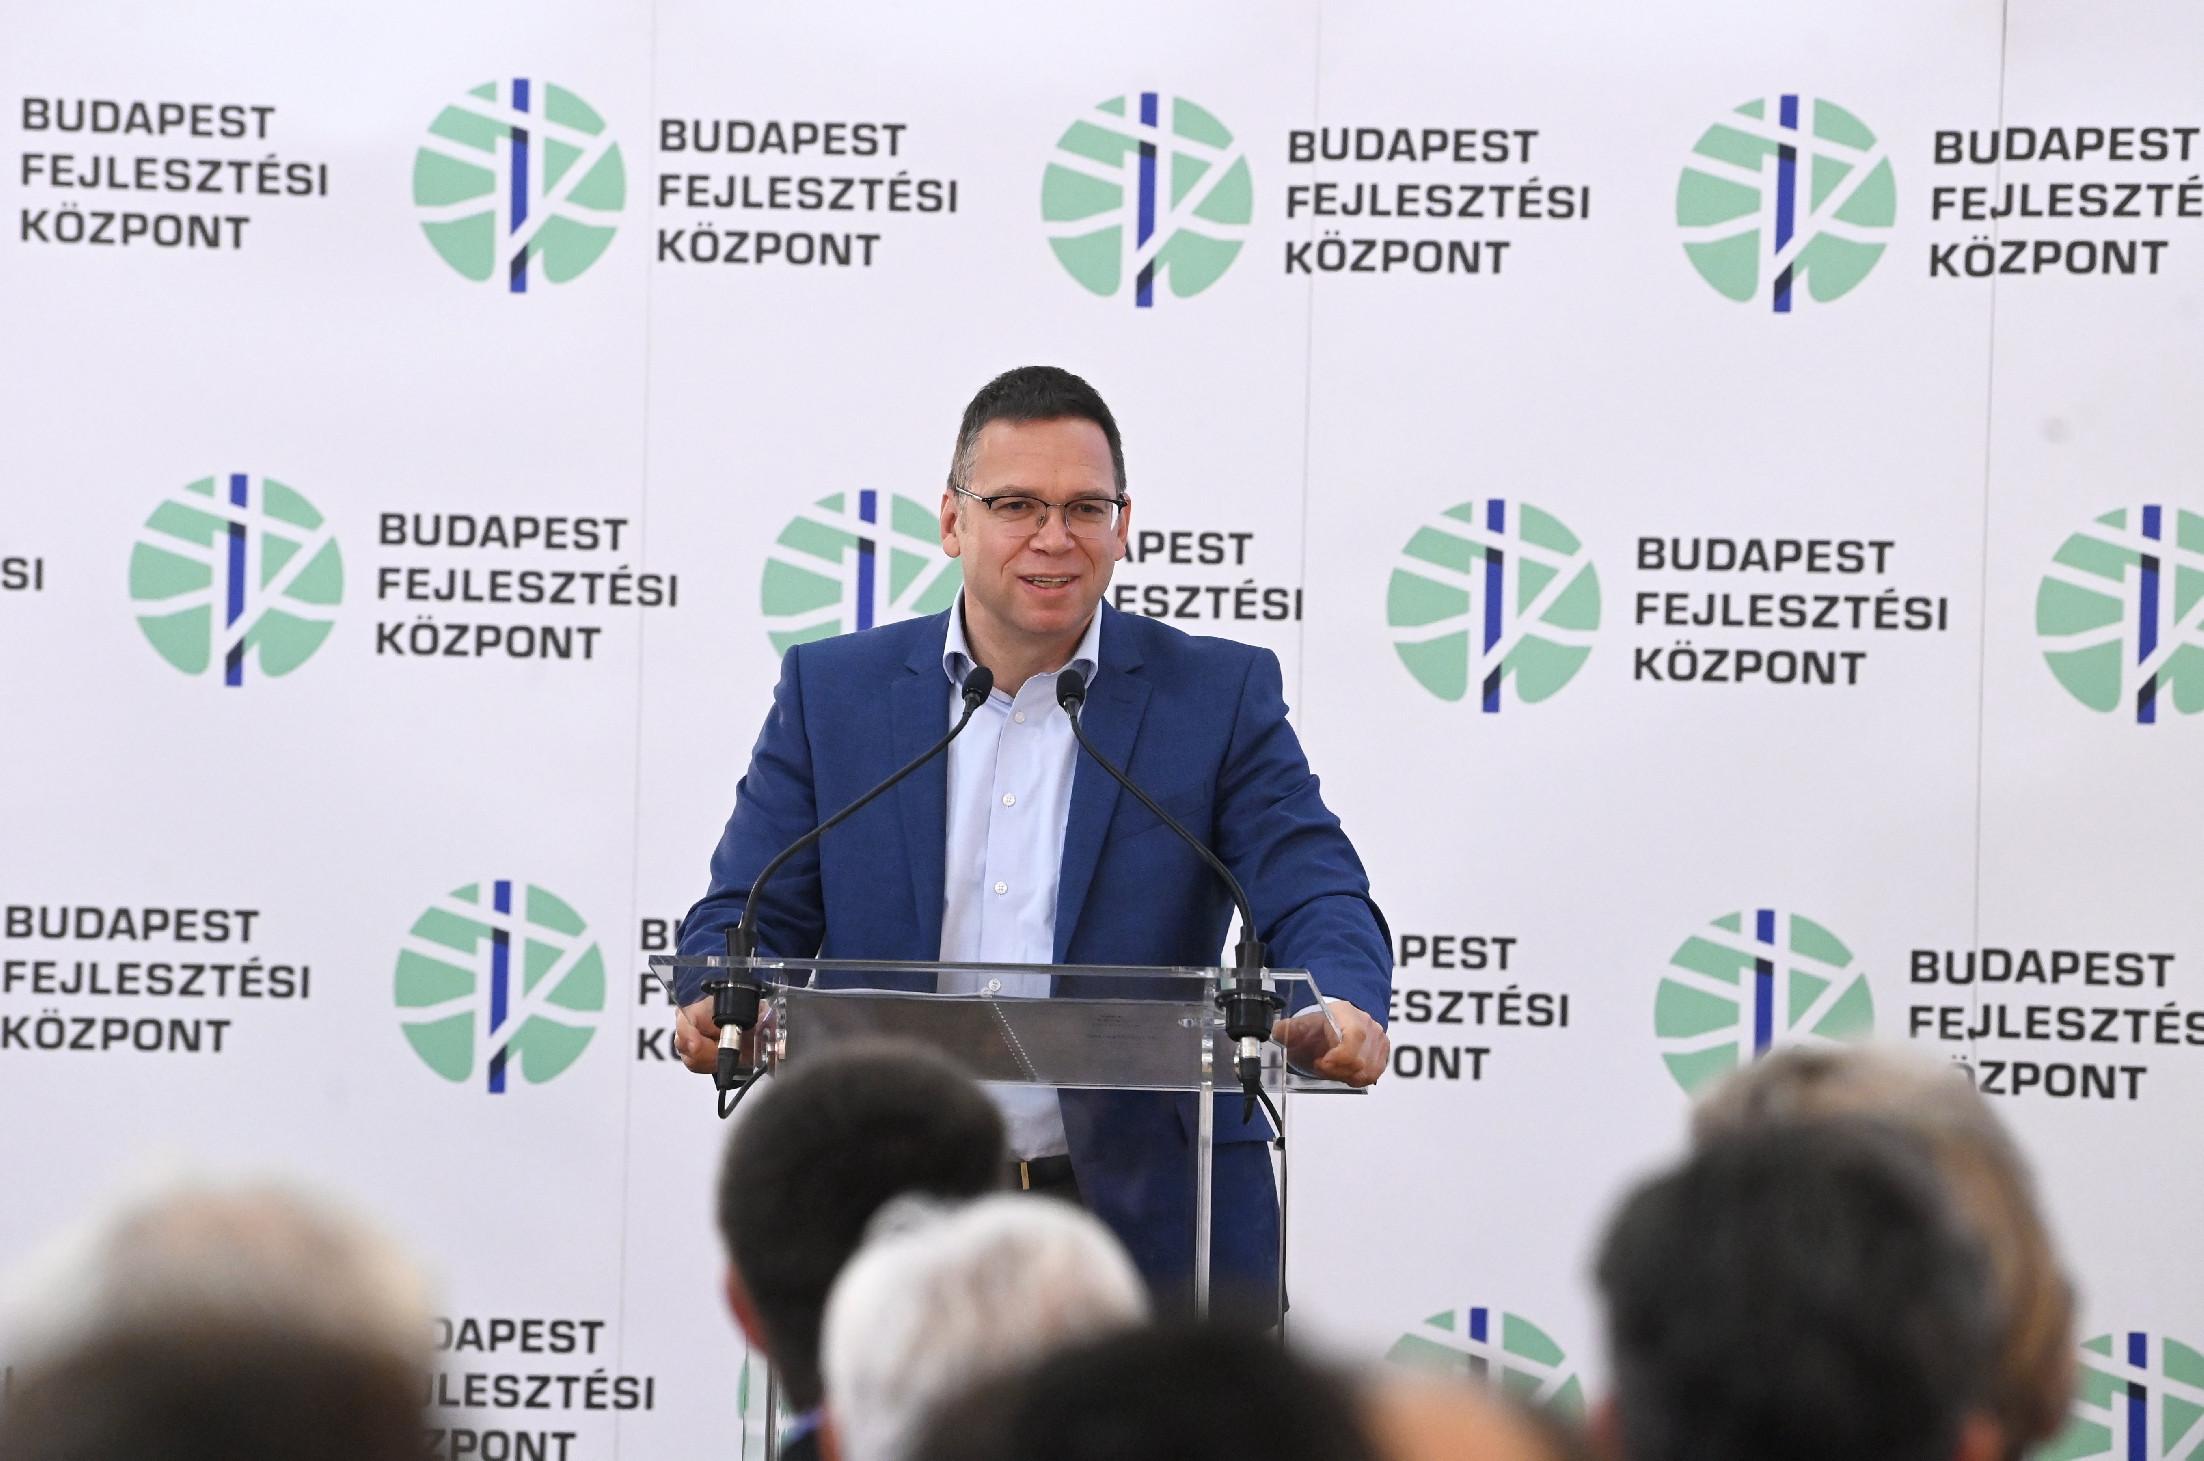 Fürjest aggasztja Budapest felszabdalásának gondolata